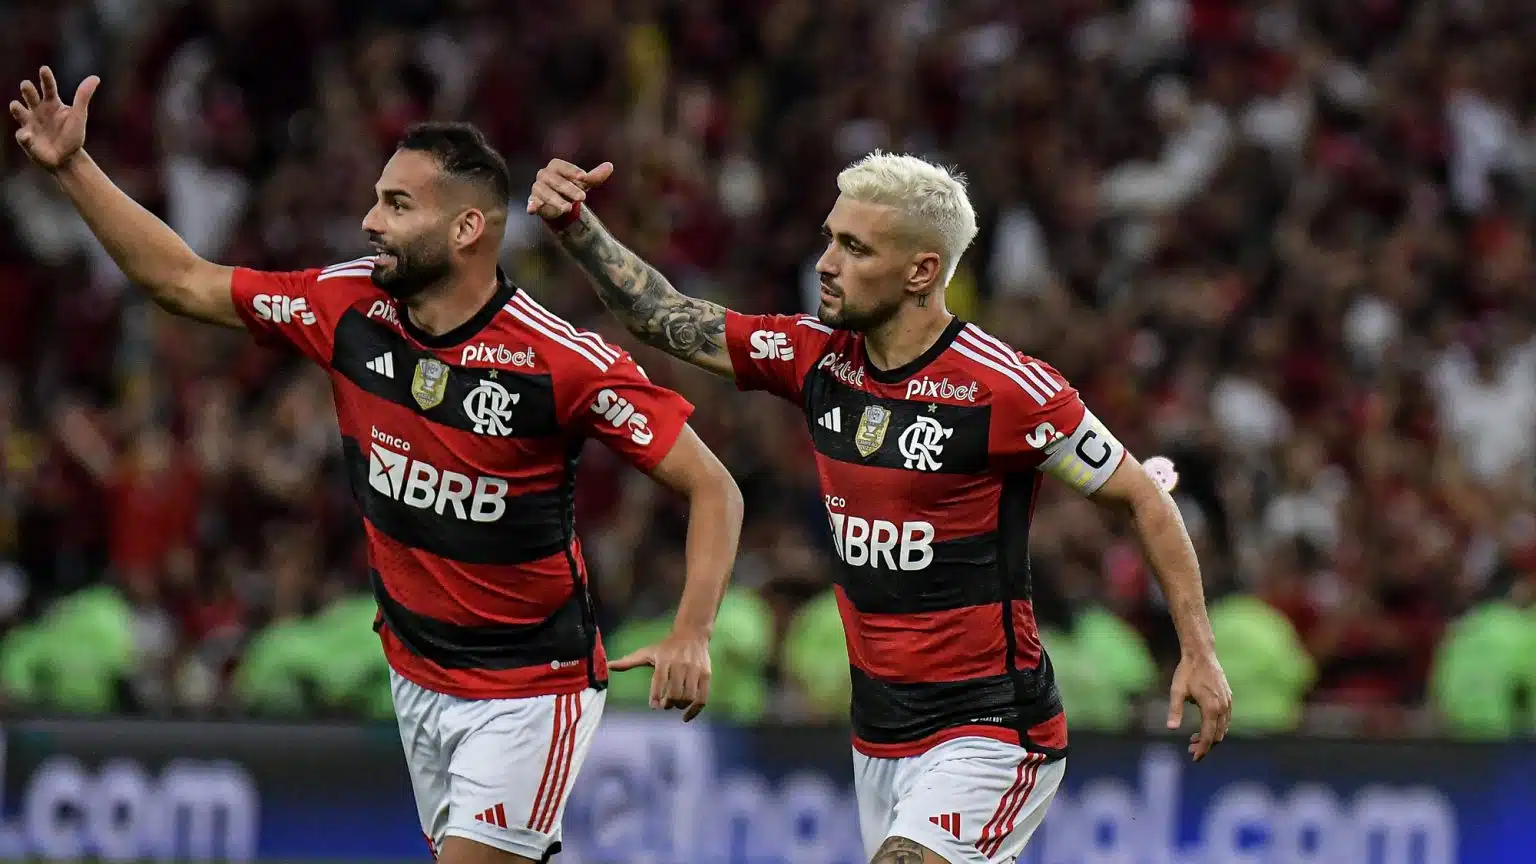 arrascaeta-flamengo-trivela-1536x864.jpg Arrascaeta marca, Flamengo vence o Grêmio de novo e está na final da Copa do Brasil